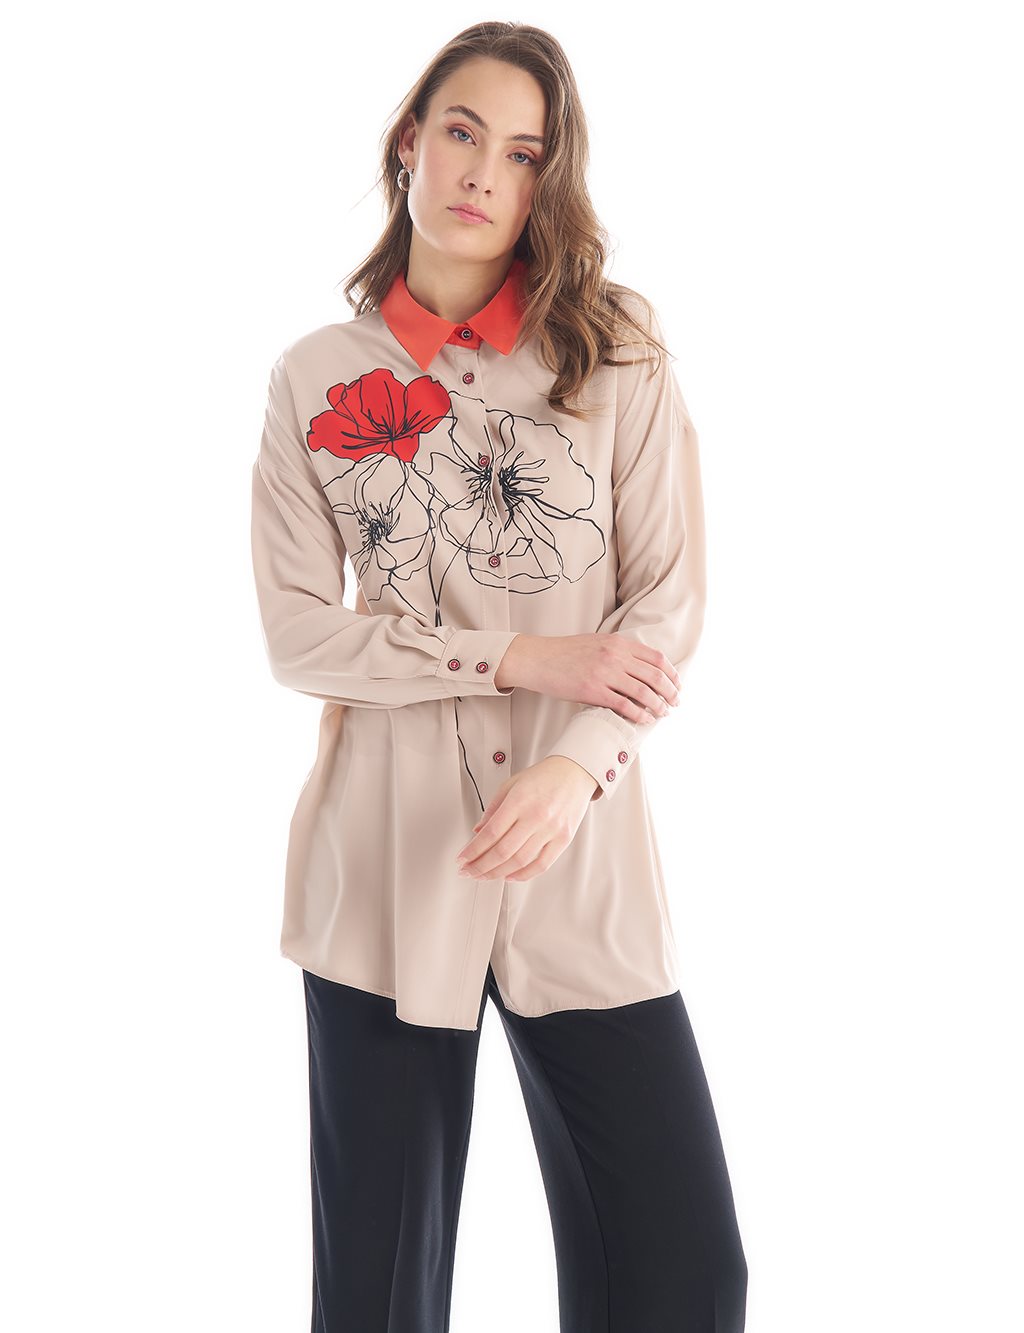 Блуза с рубашечным воротником с цветочным принтом Песочно-бежевая Kayra my desire ar5033 belisa curling irons sand beige